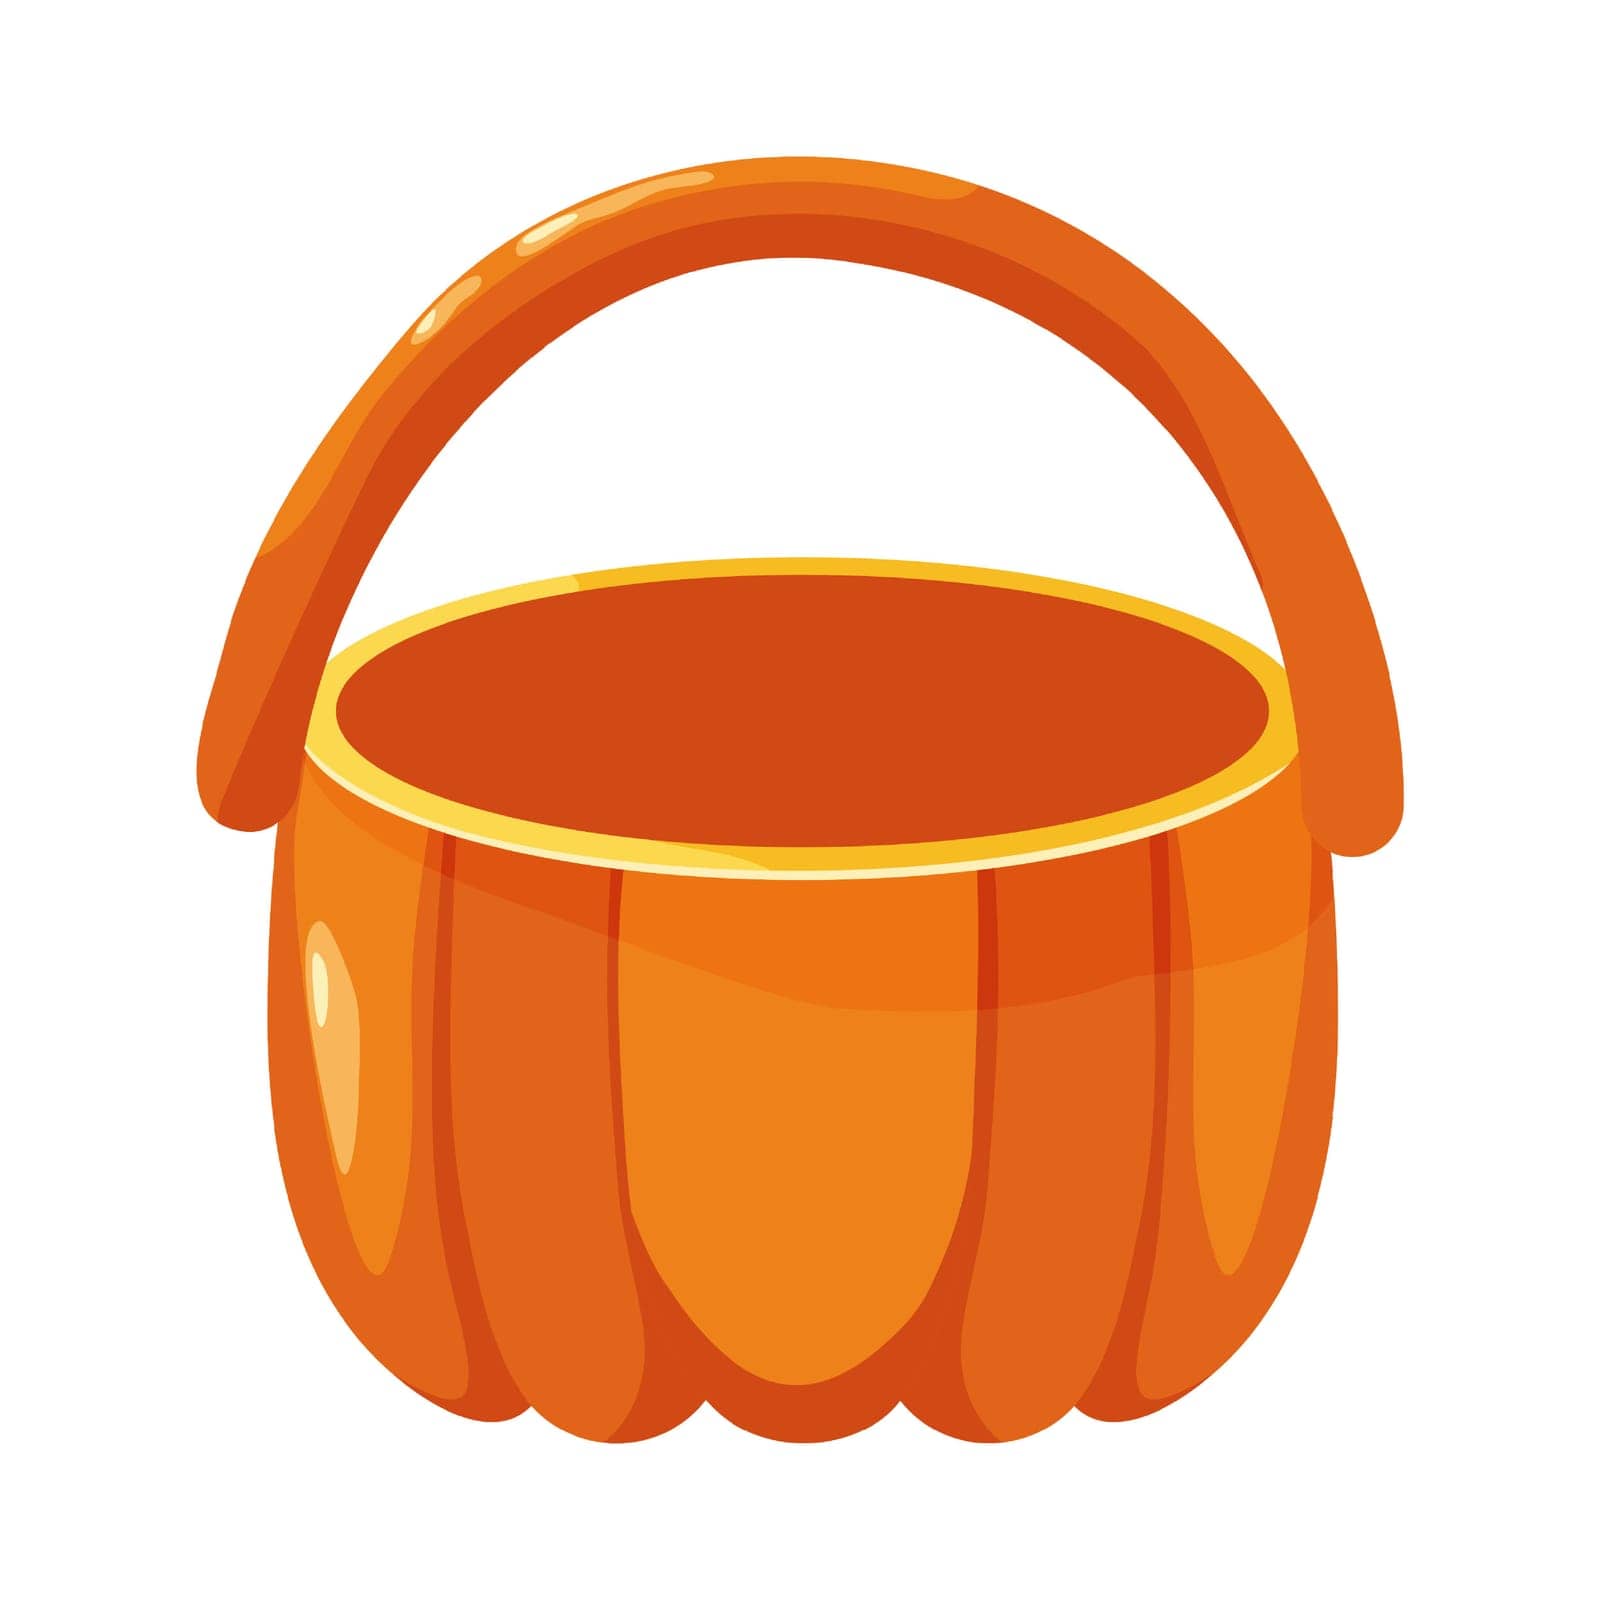 Orange pumpkin basket on a white background. by Mallva